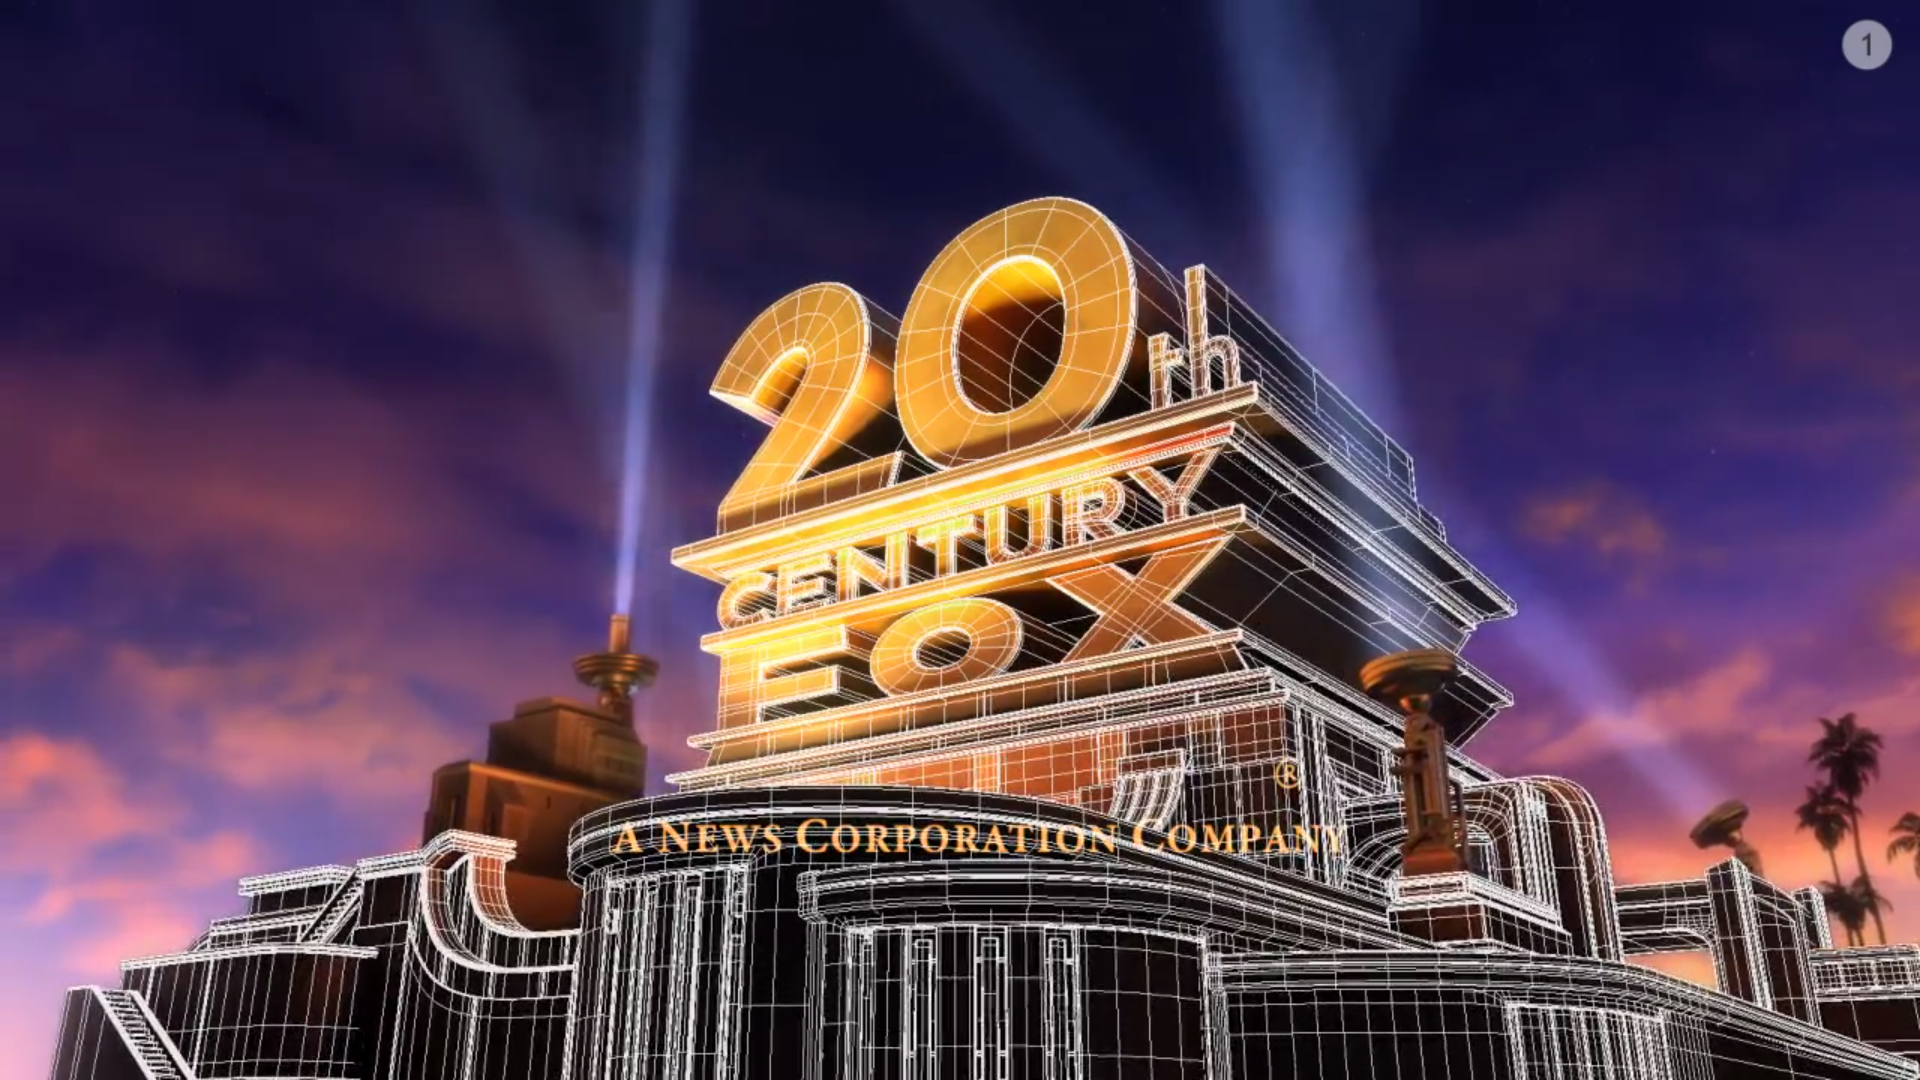 20тн Центури Фокс. Студия 20 век Фокс в Лос Анджелесе. 20 Век Центури Фокс. 20th Century Fox 2009. 20 th century